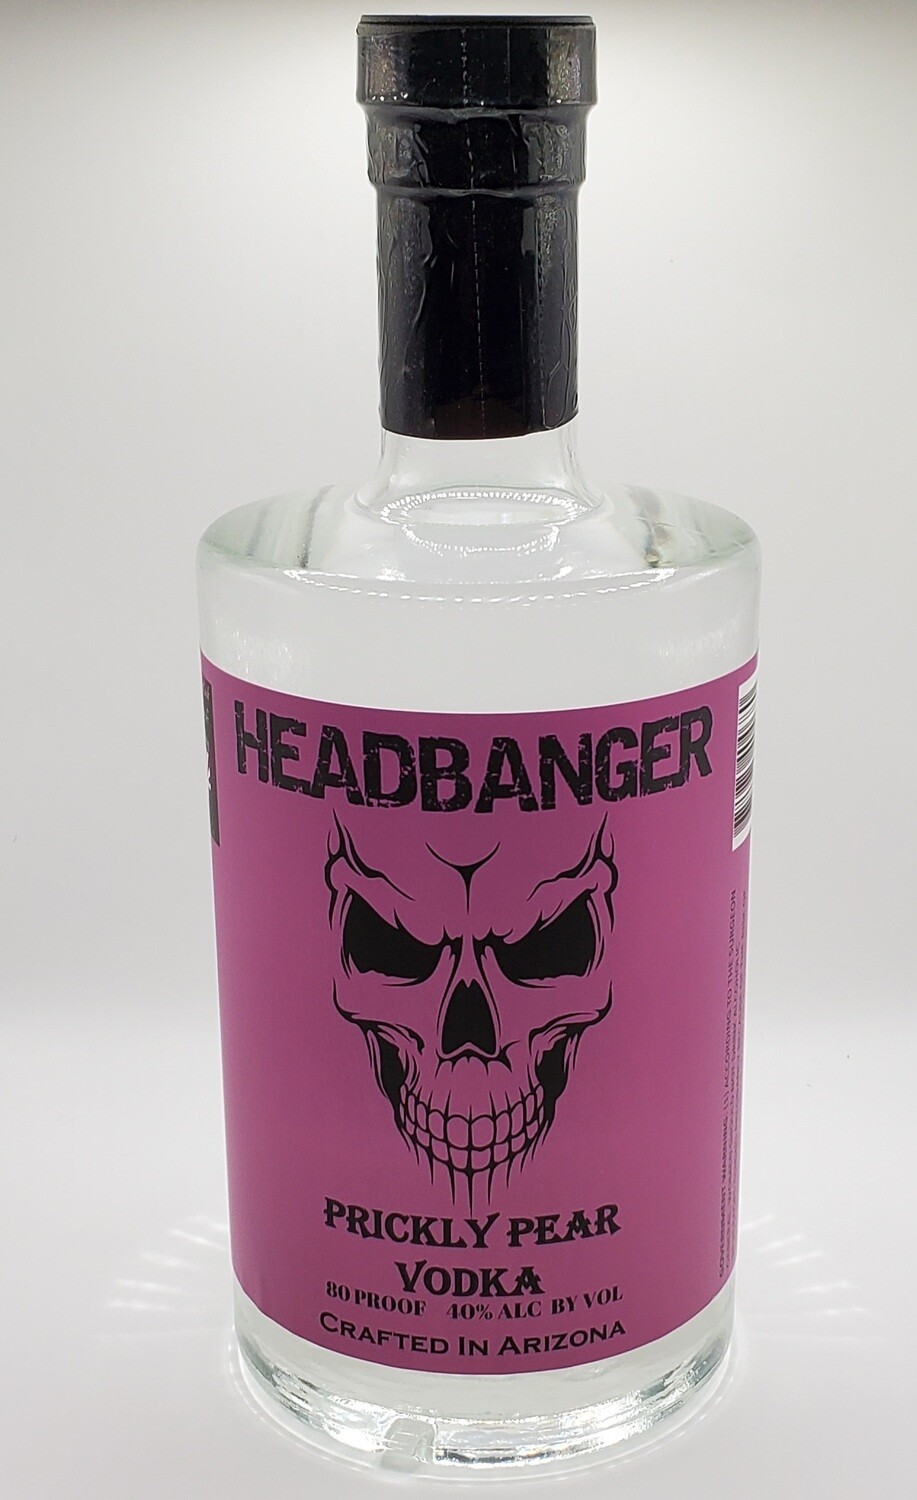 Headbanger Prickly Pear Vodka 80 Proof